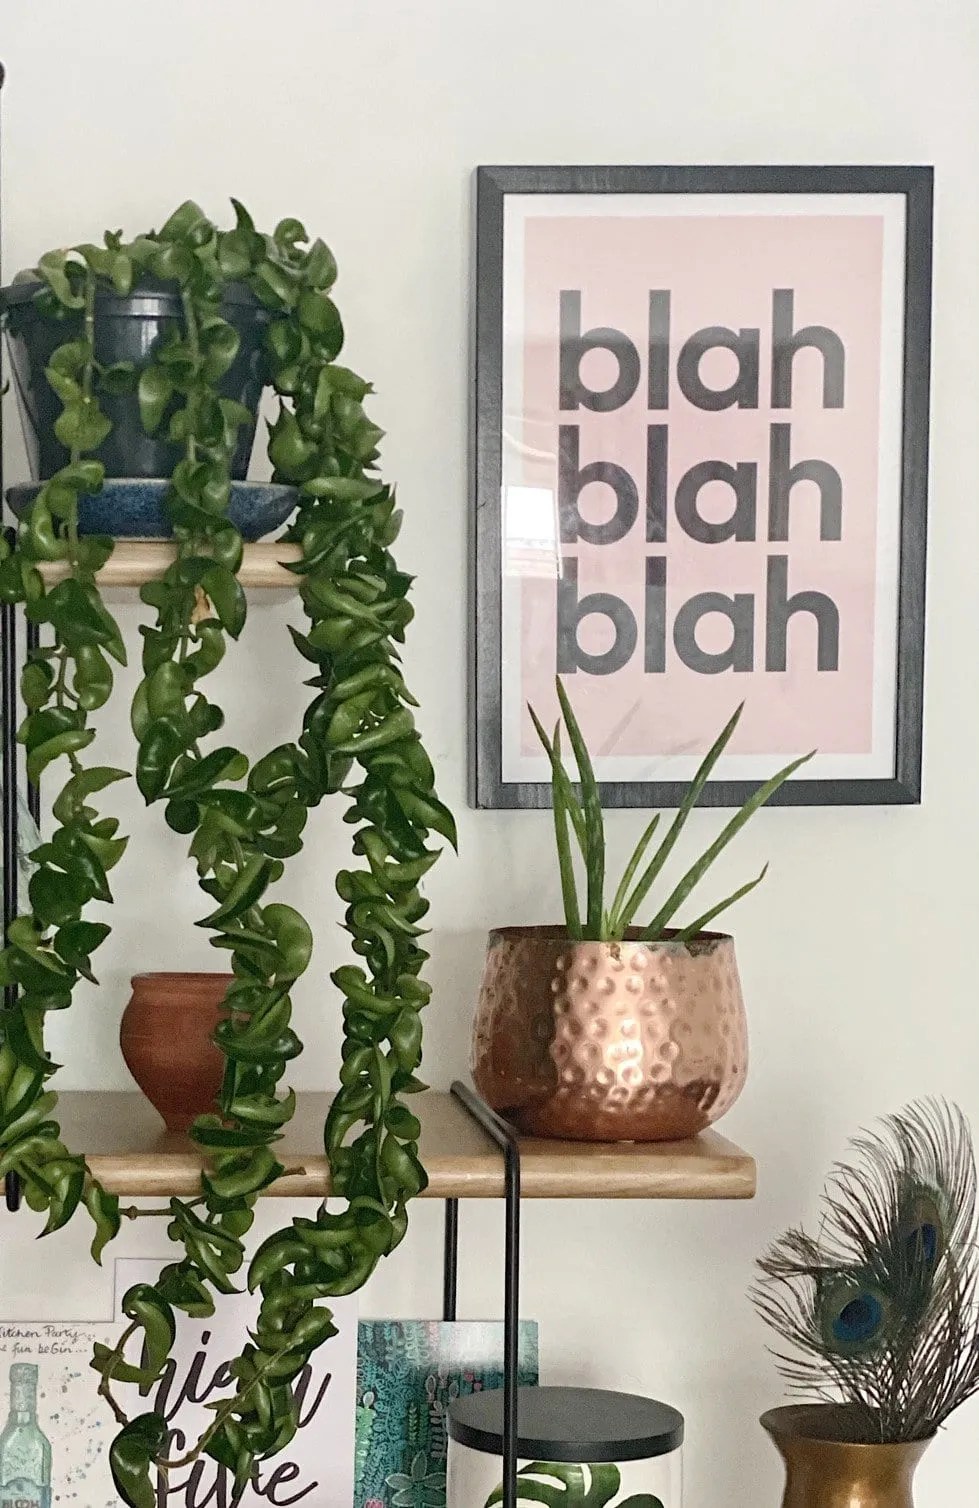 a lipstick plant and an aloe vera on a shelf